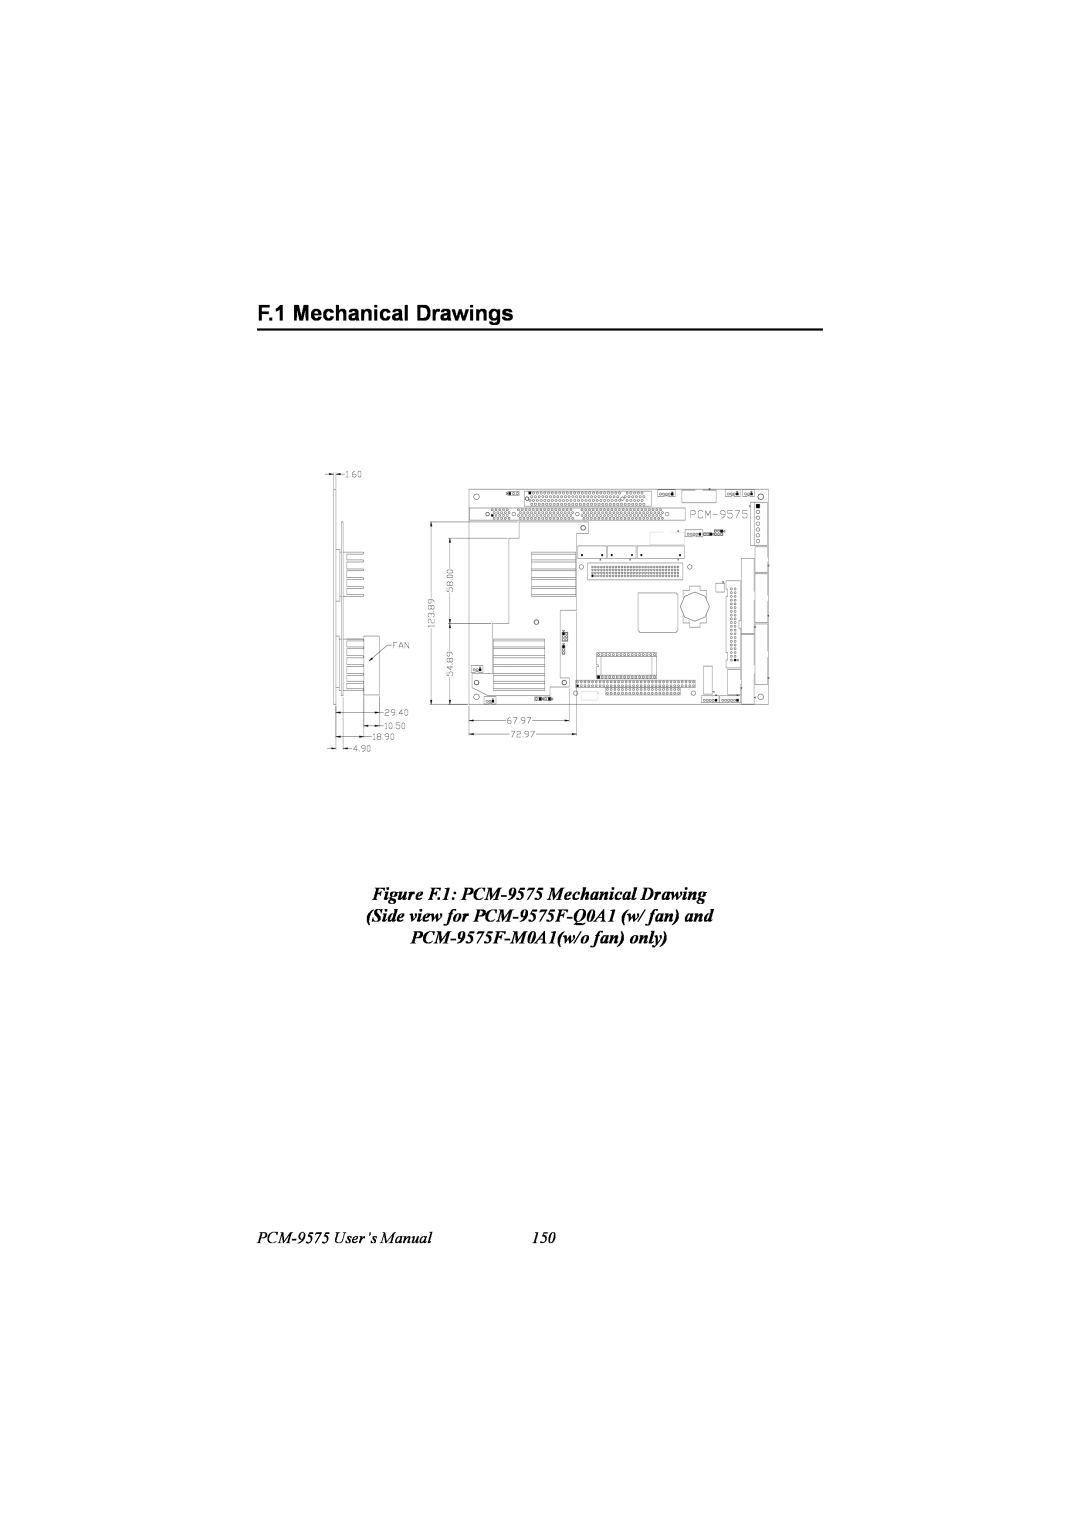 IBM 100/10 user manual F.1 Mechanical Drawings, PCM-9575 User’s Manual 